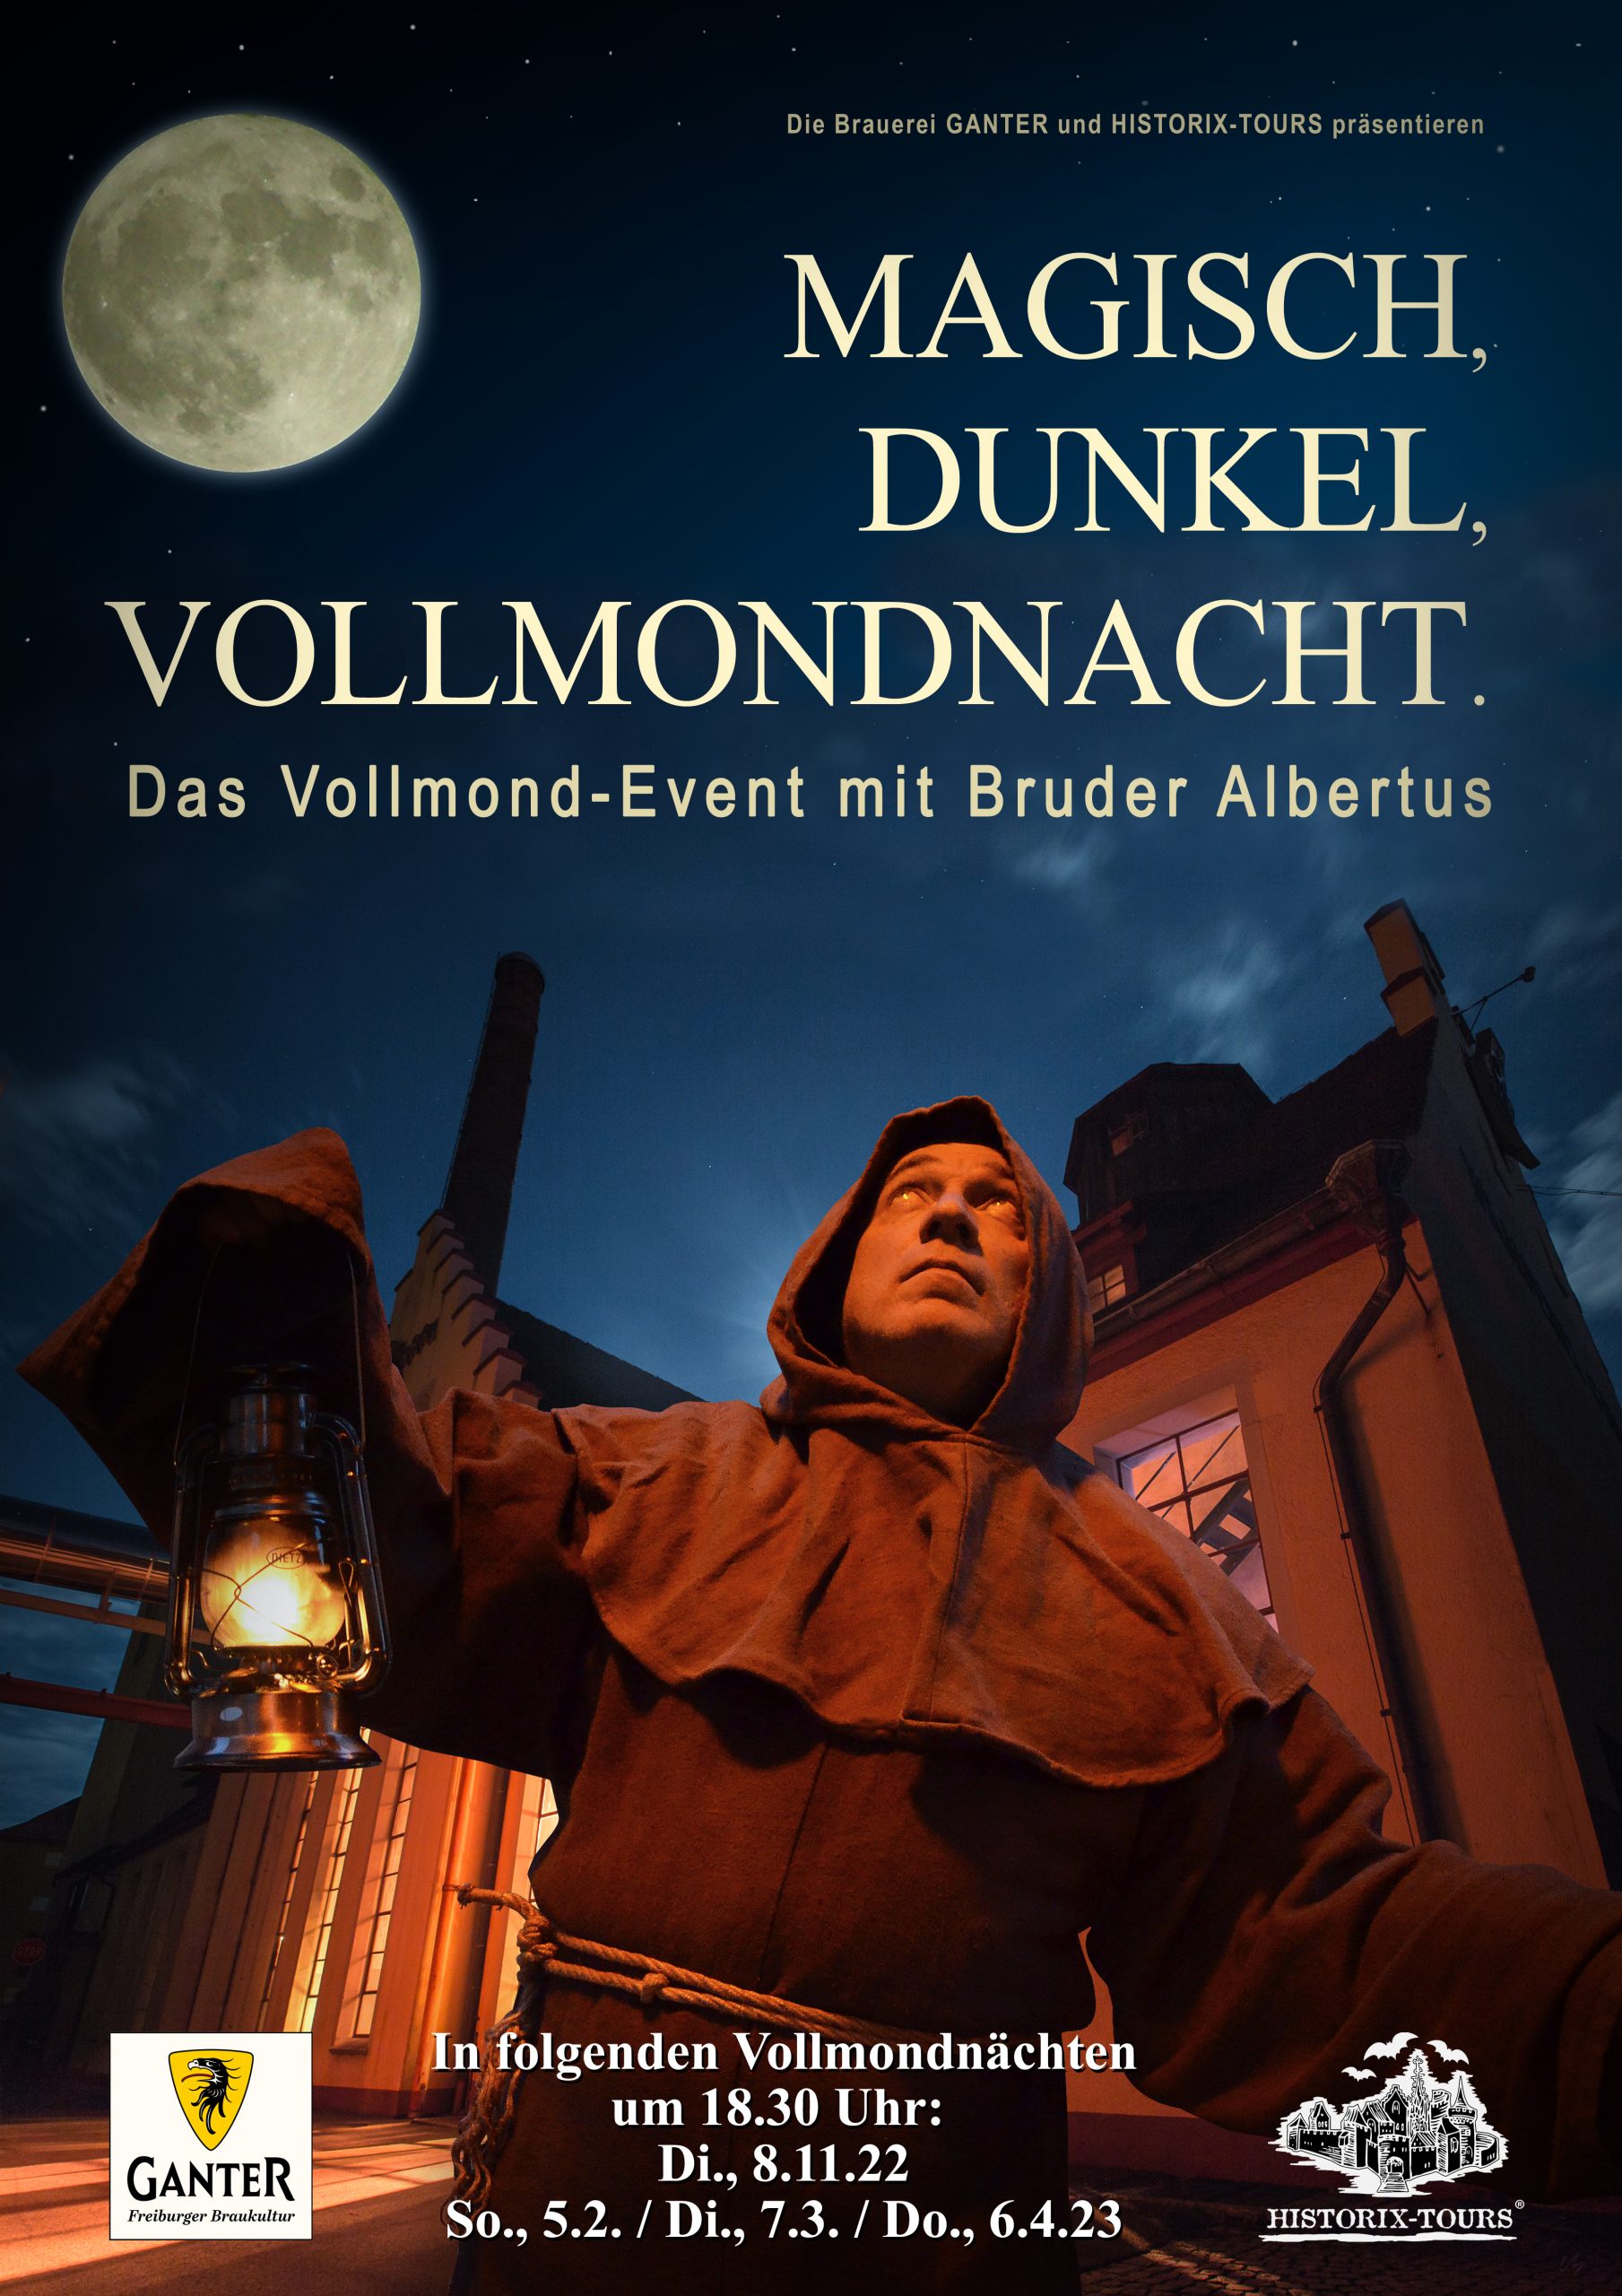 Vollmond-Event: "Magisch, Dunkel, Vollmondnacht" in Zusammenarbeit mit der Brauerei Ganter